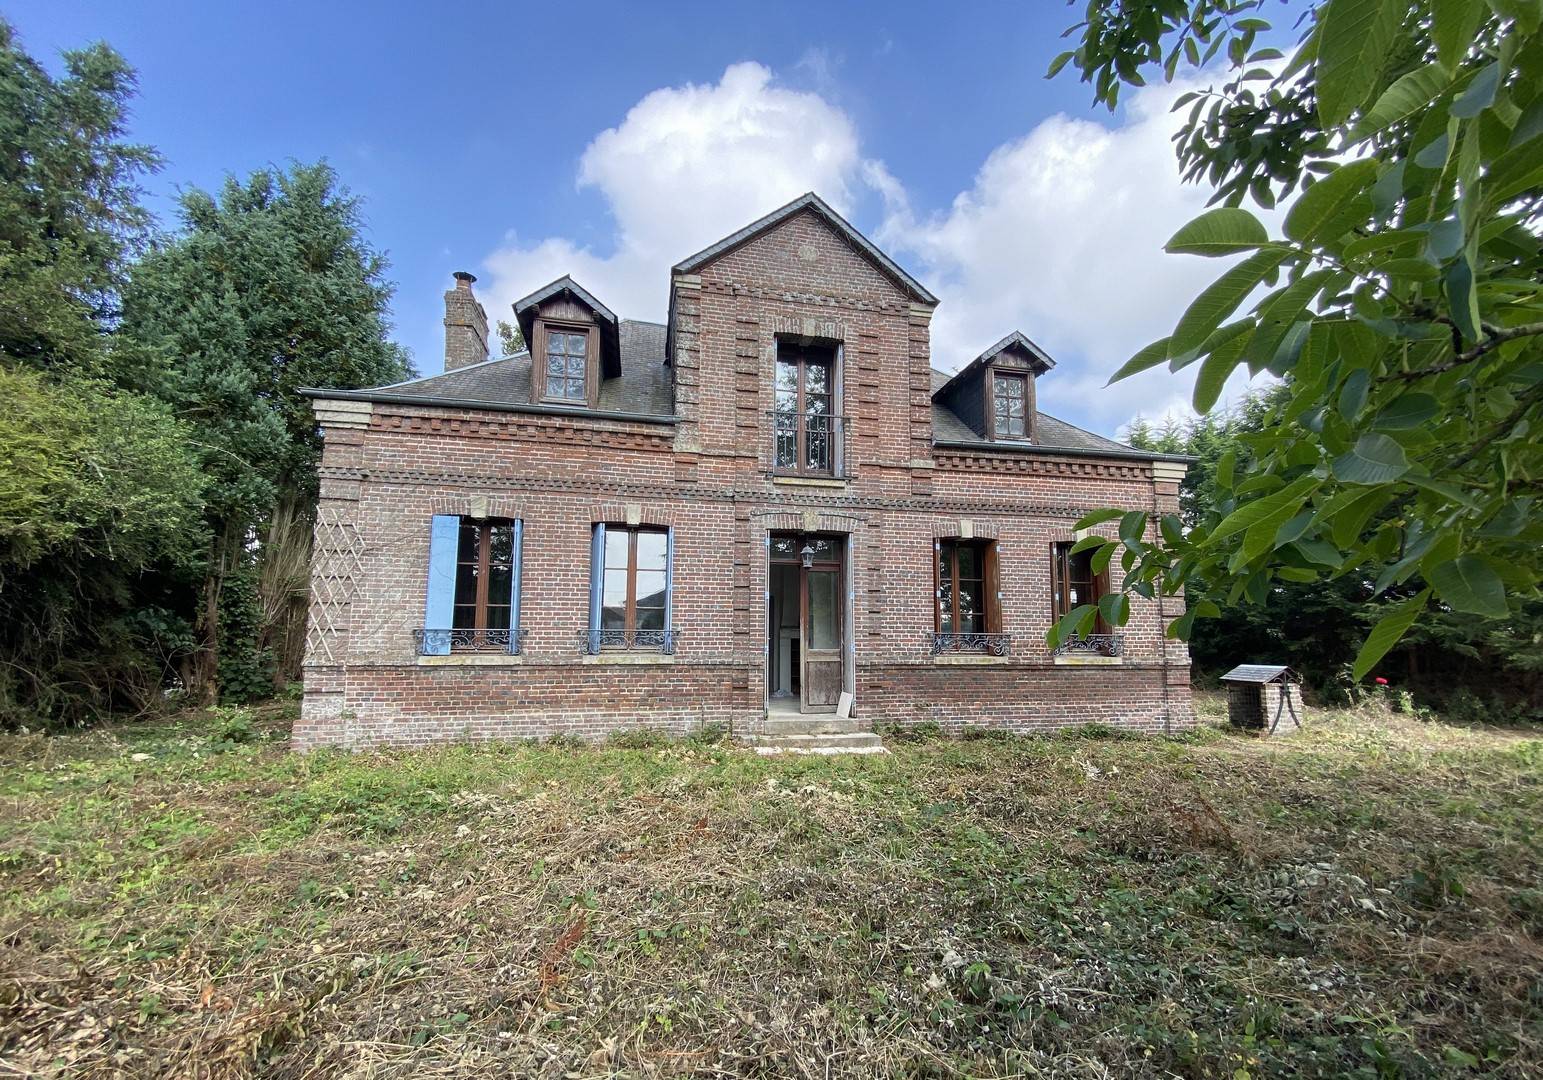 A vendre charmante maison en briques avec charme et carcatère en Normandie sur 1620m² de terrain.